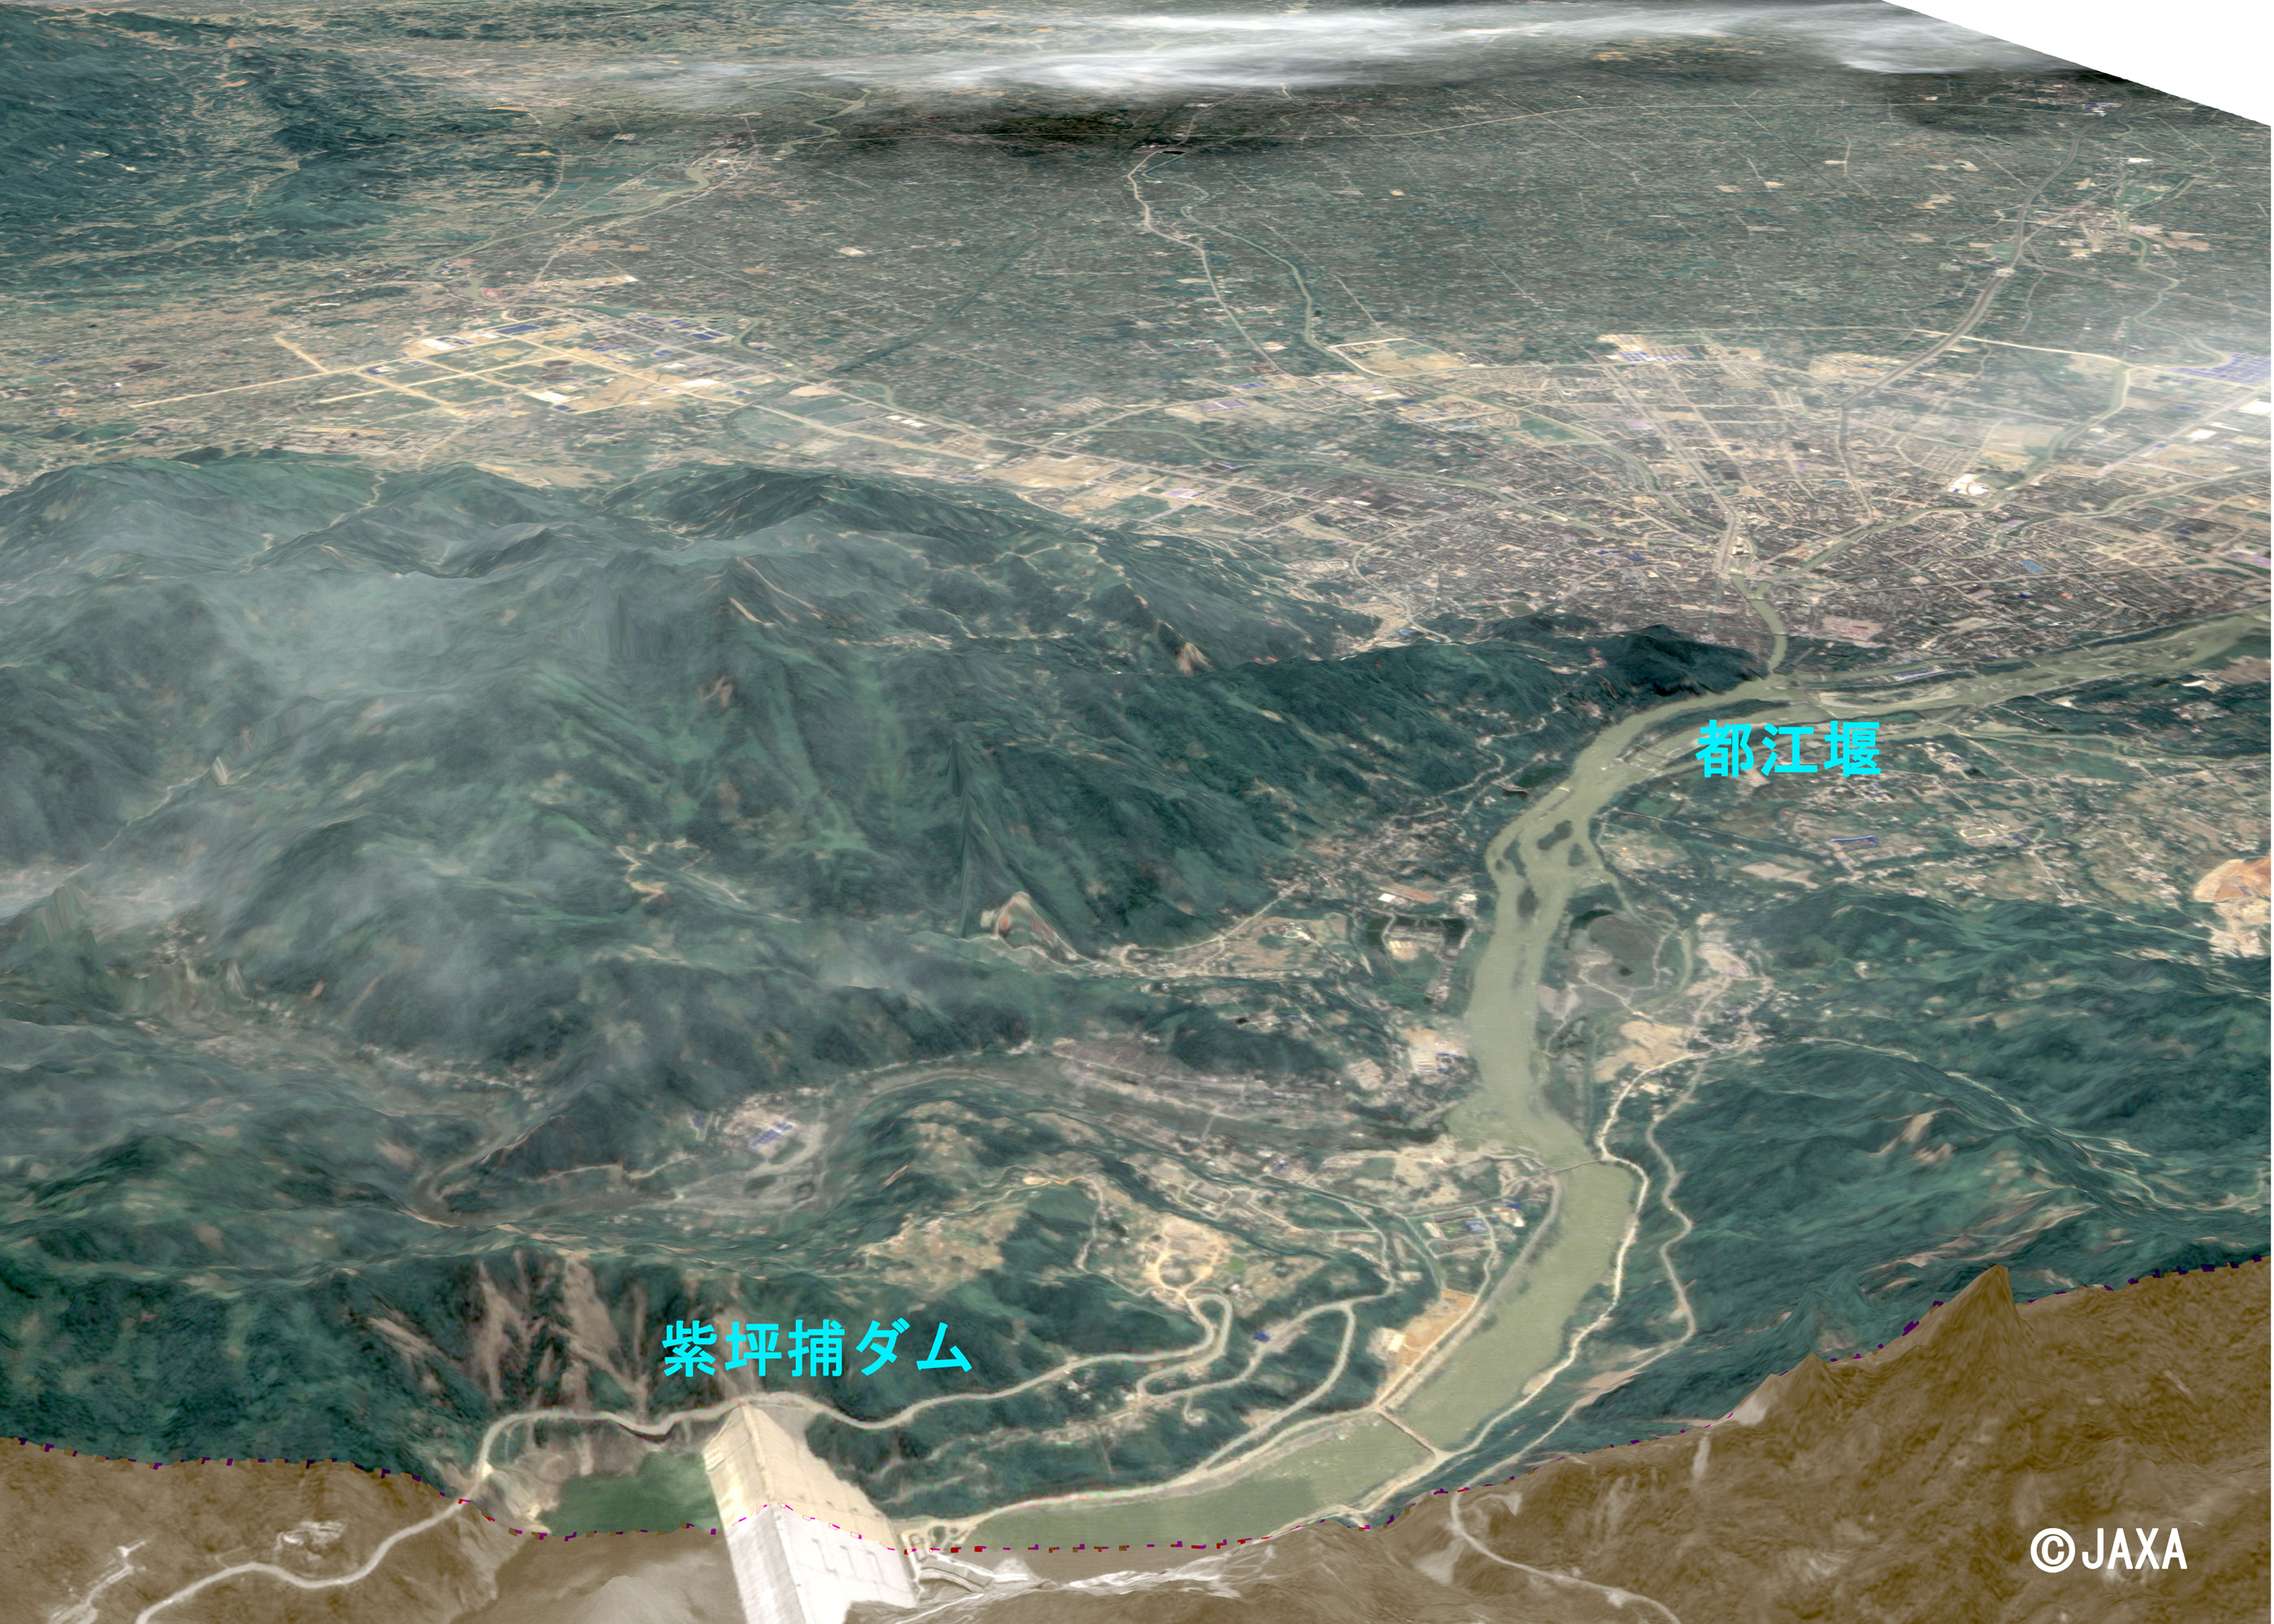 図2: 2008年6月4日(災害後)PRISM/AVNIR-2による都江堰付近の鳥瞰図